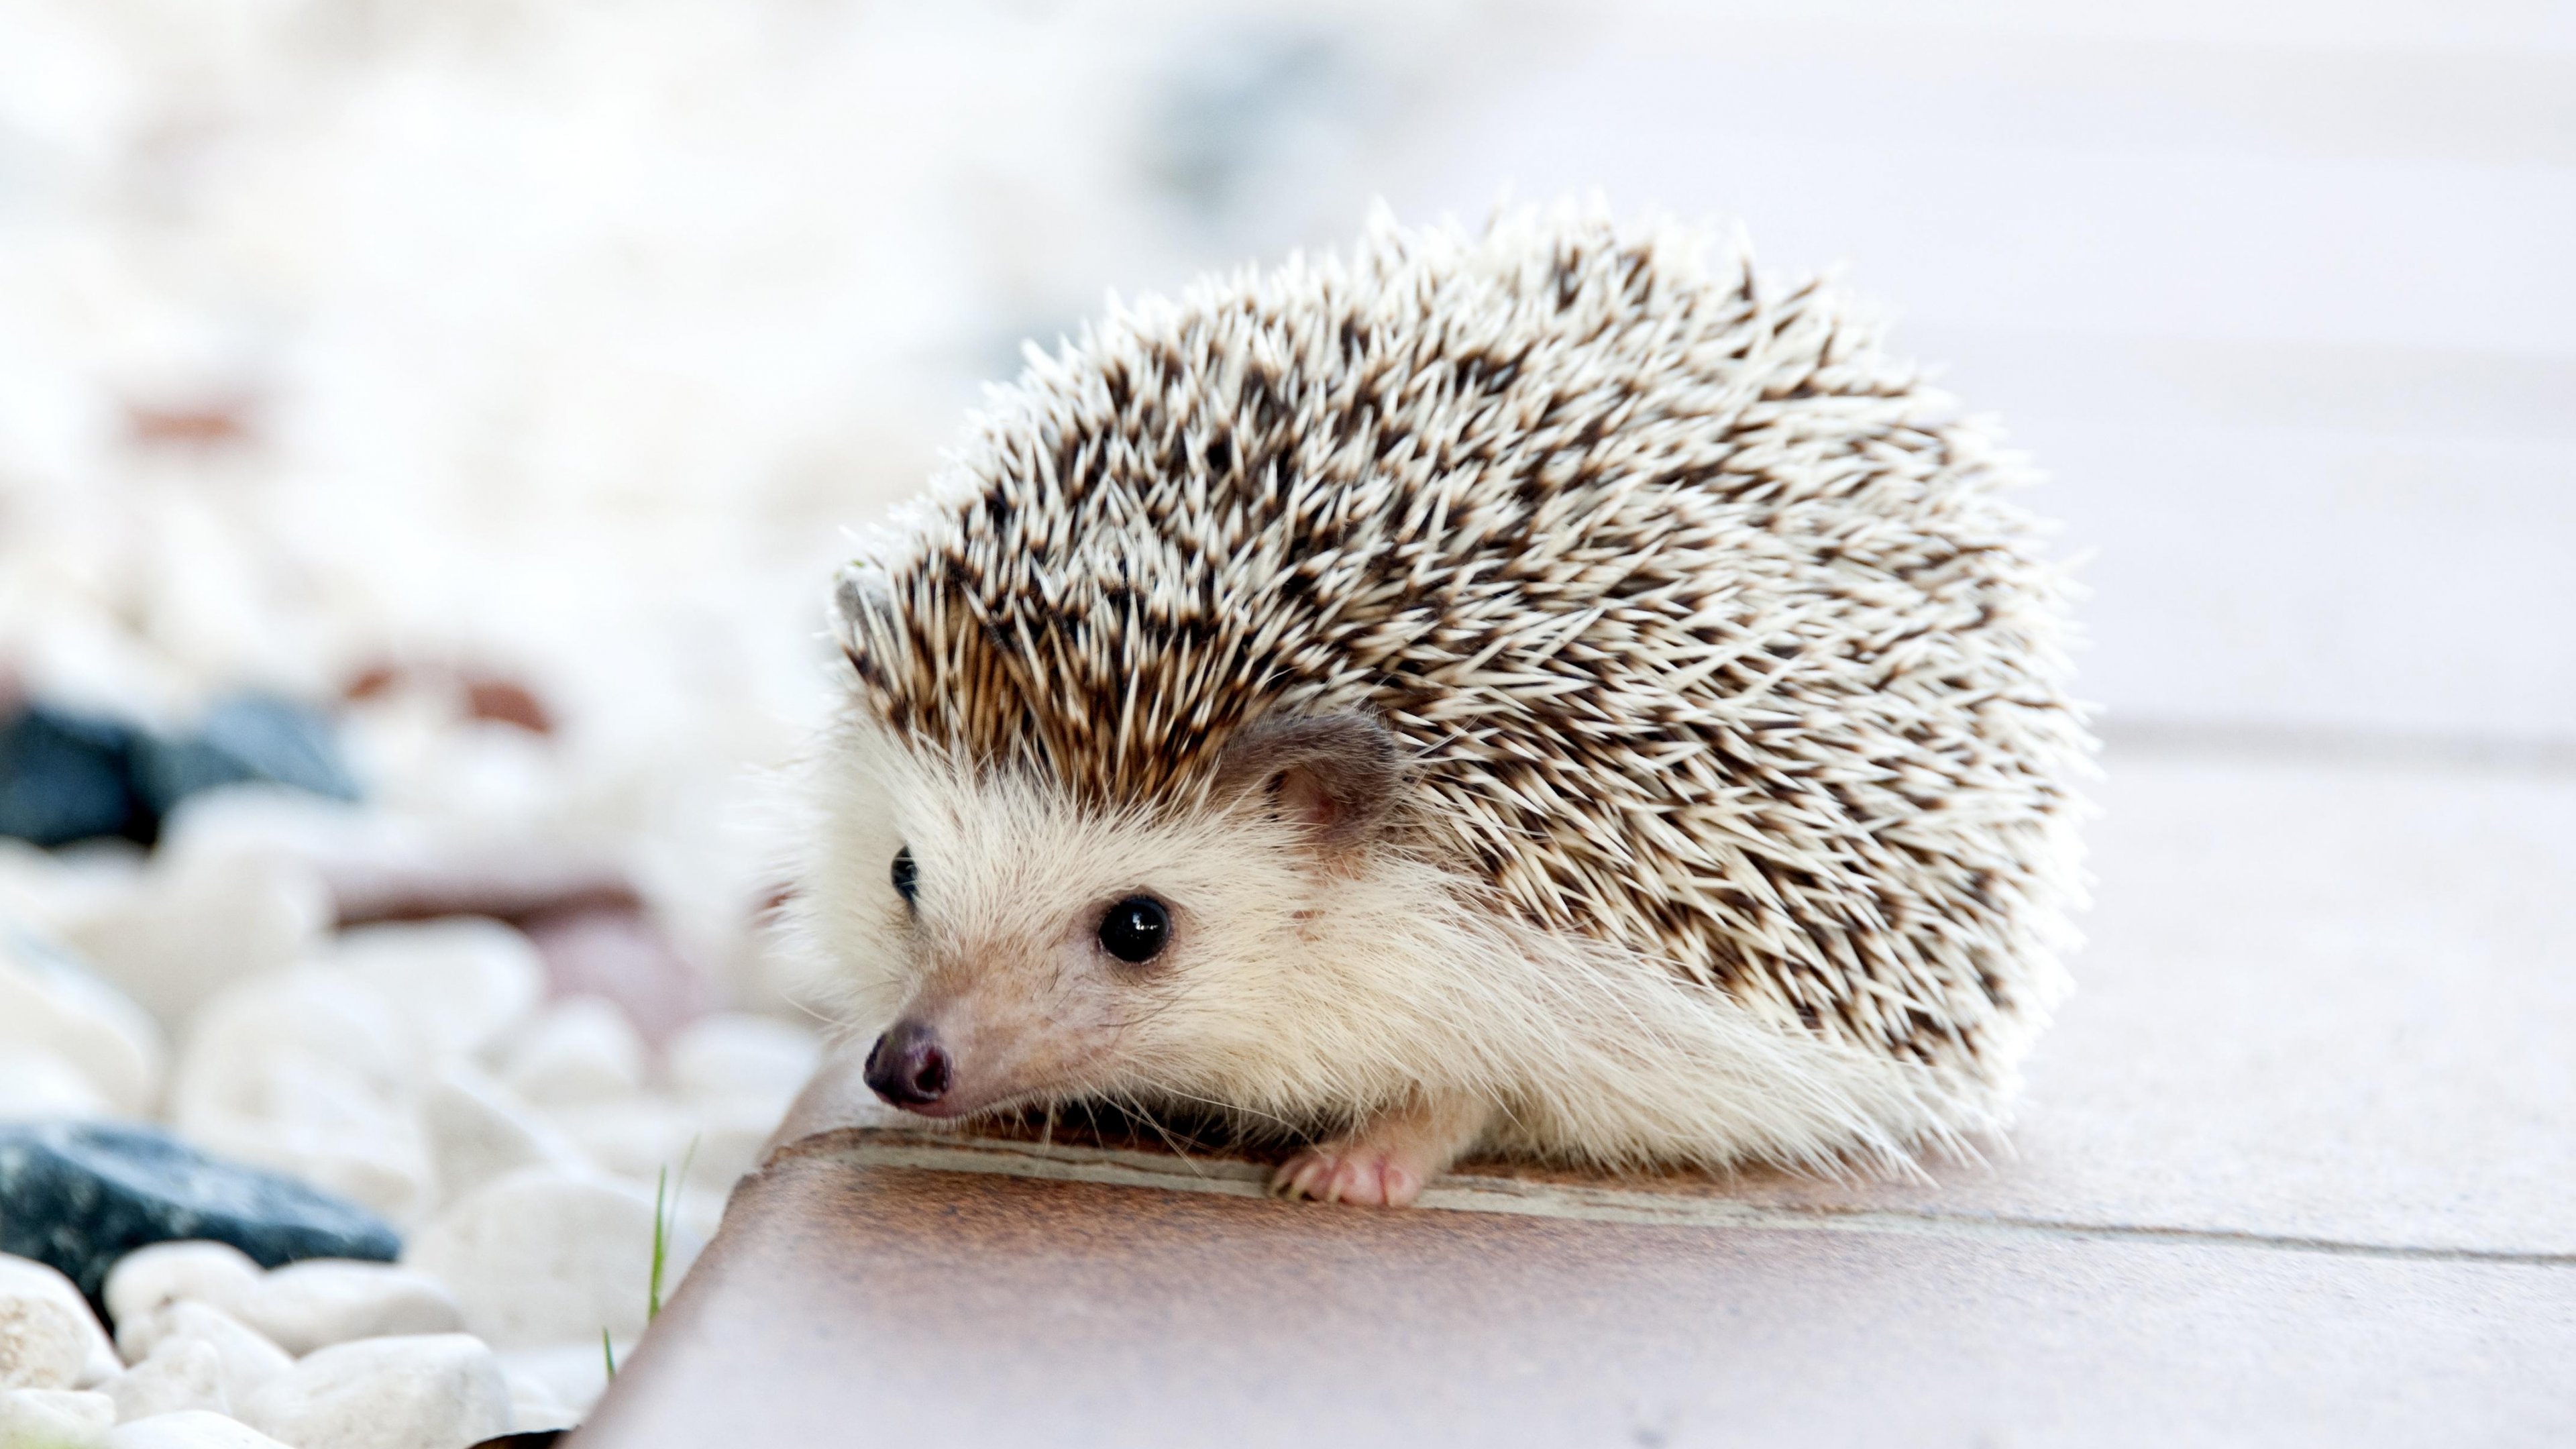 Adorable hedgehog wallpaper